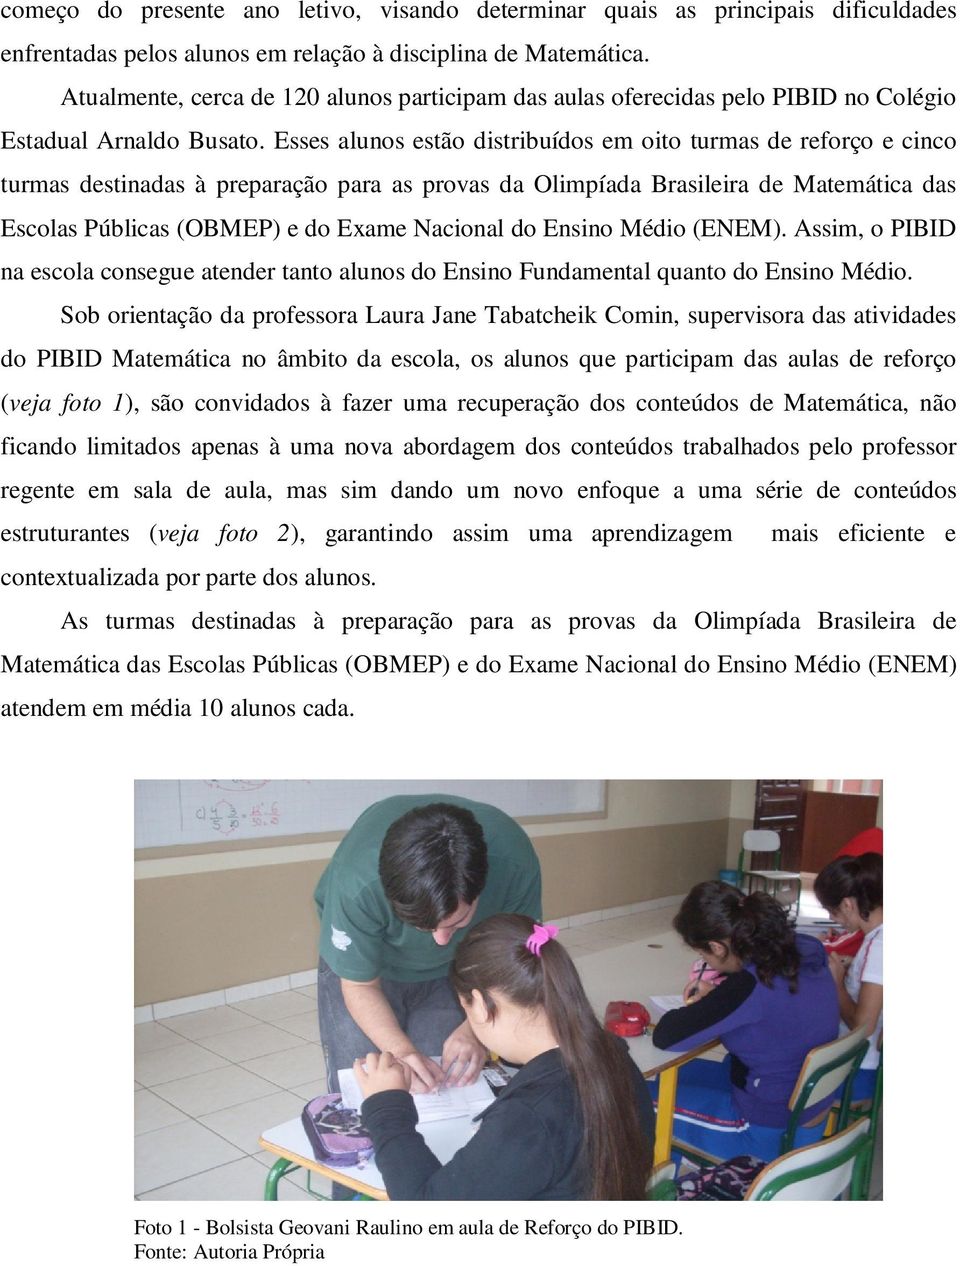 Esses alunos estão distribuídos em oito turmas de reforço e cinco turmas destinadas à preparação para as provas da Olimpíada Brasileira de Matemática das Escolas Públicas (OBMEP) e do Exame Nacional